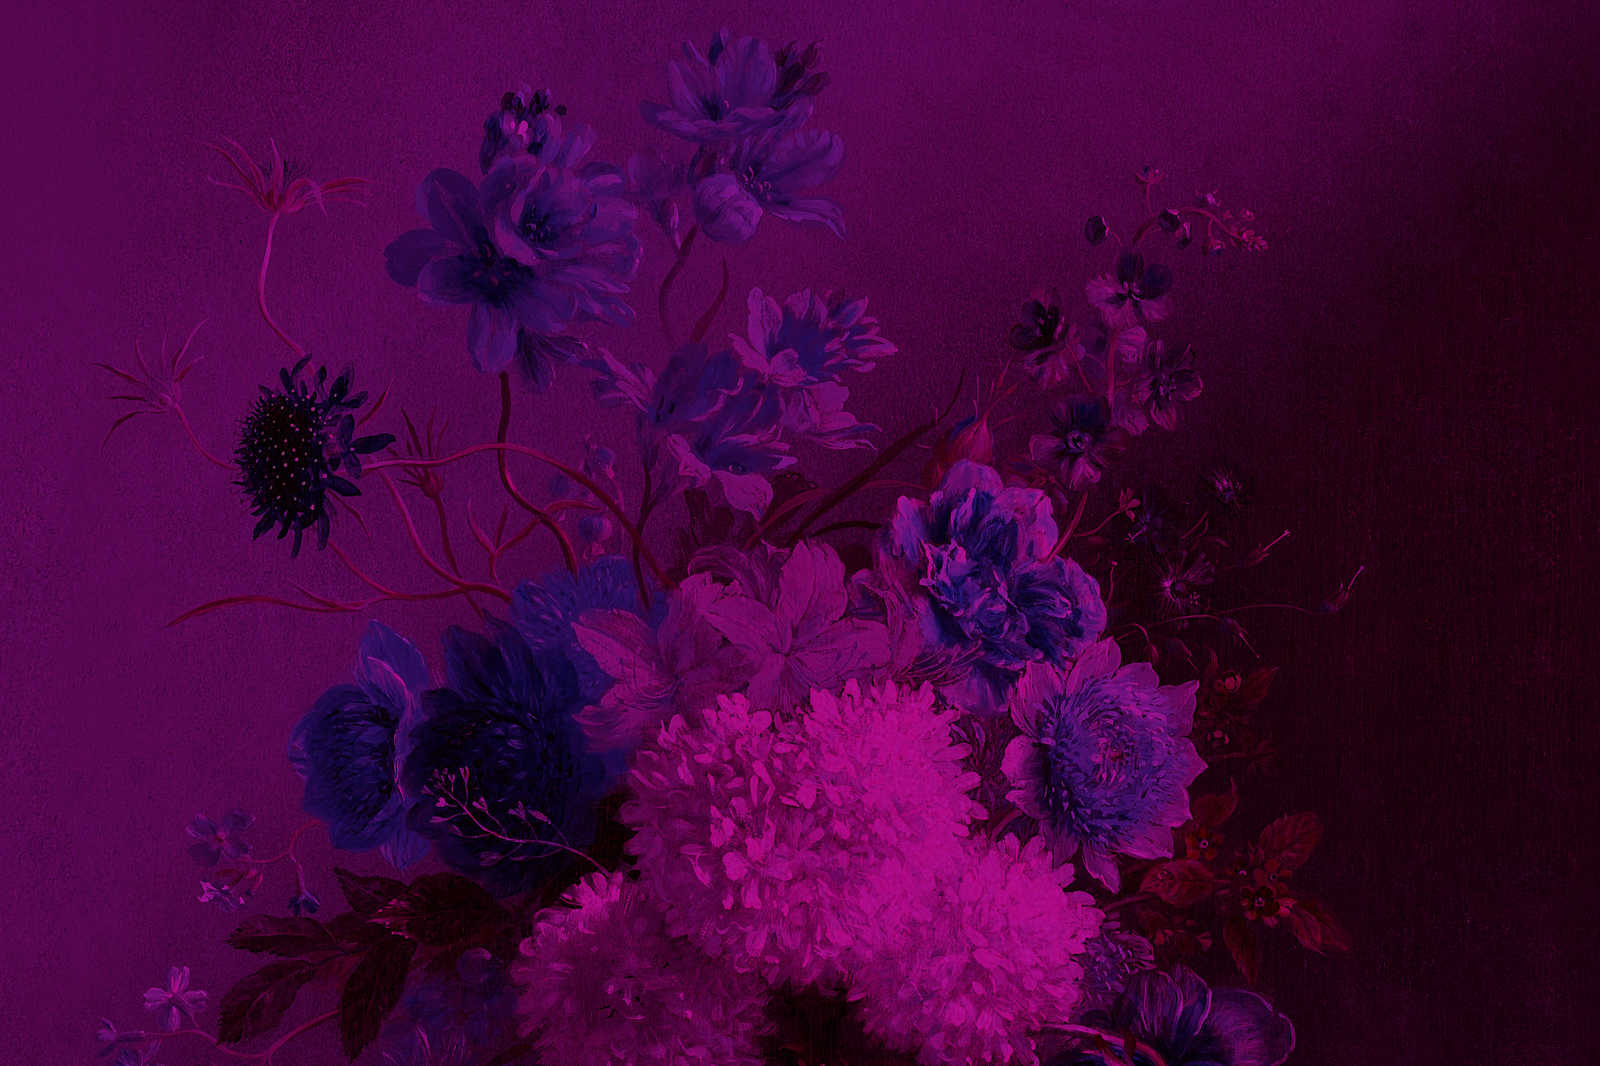             Pittura su tela al neon con fiori Natura morta | bouquet Vibran 3 - 0,90 m x 0,60 m
        